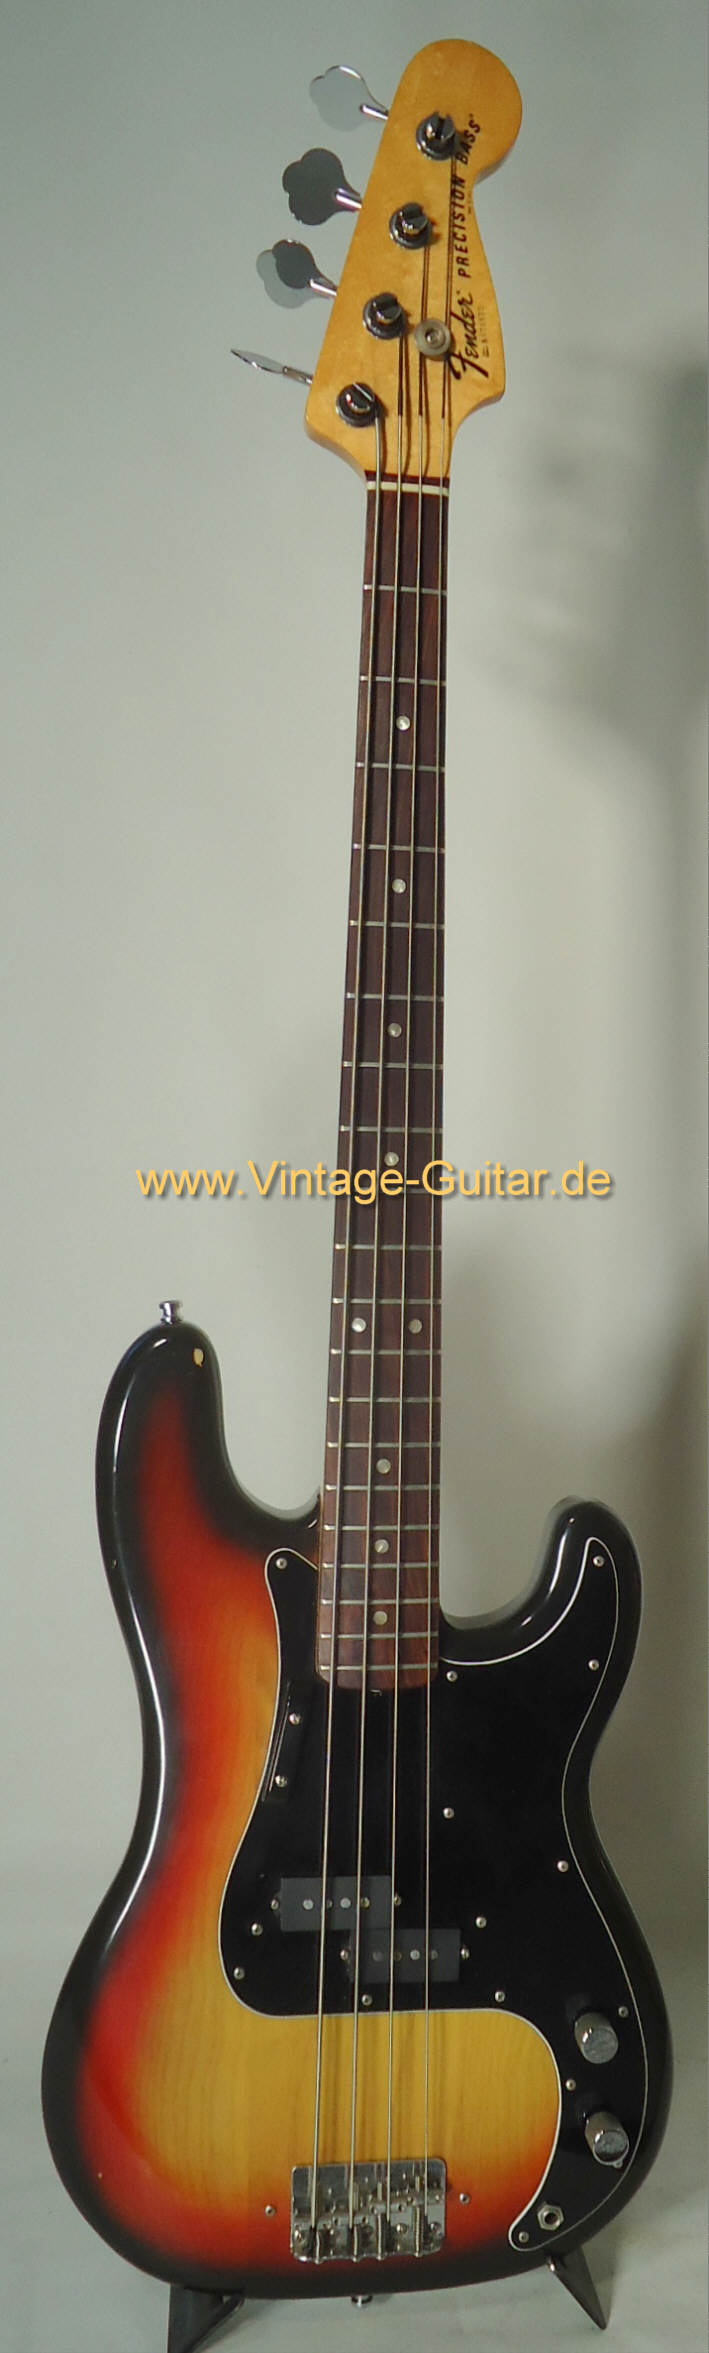 Fender-Precision-1979-sunburst_1.jpg